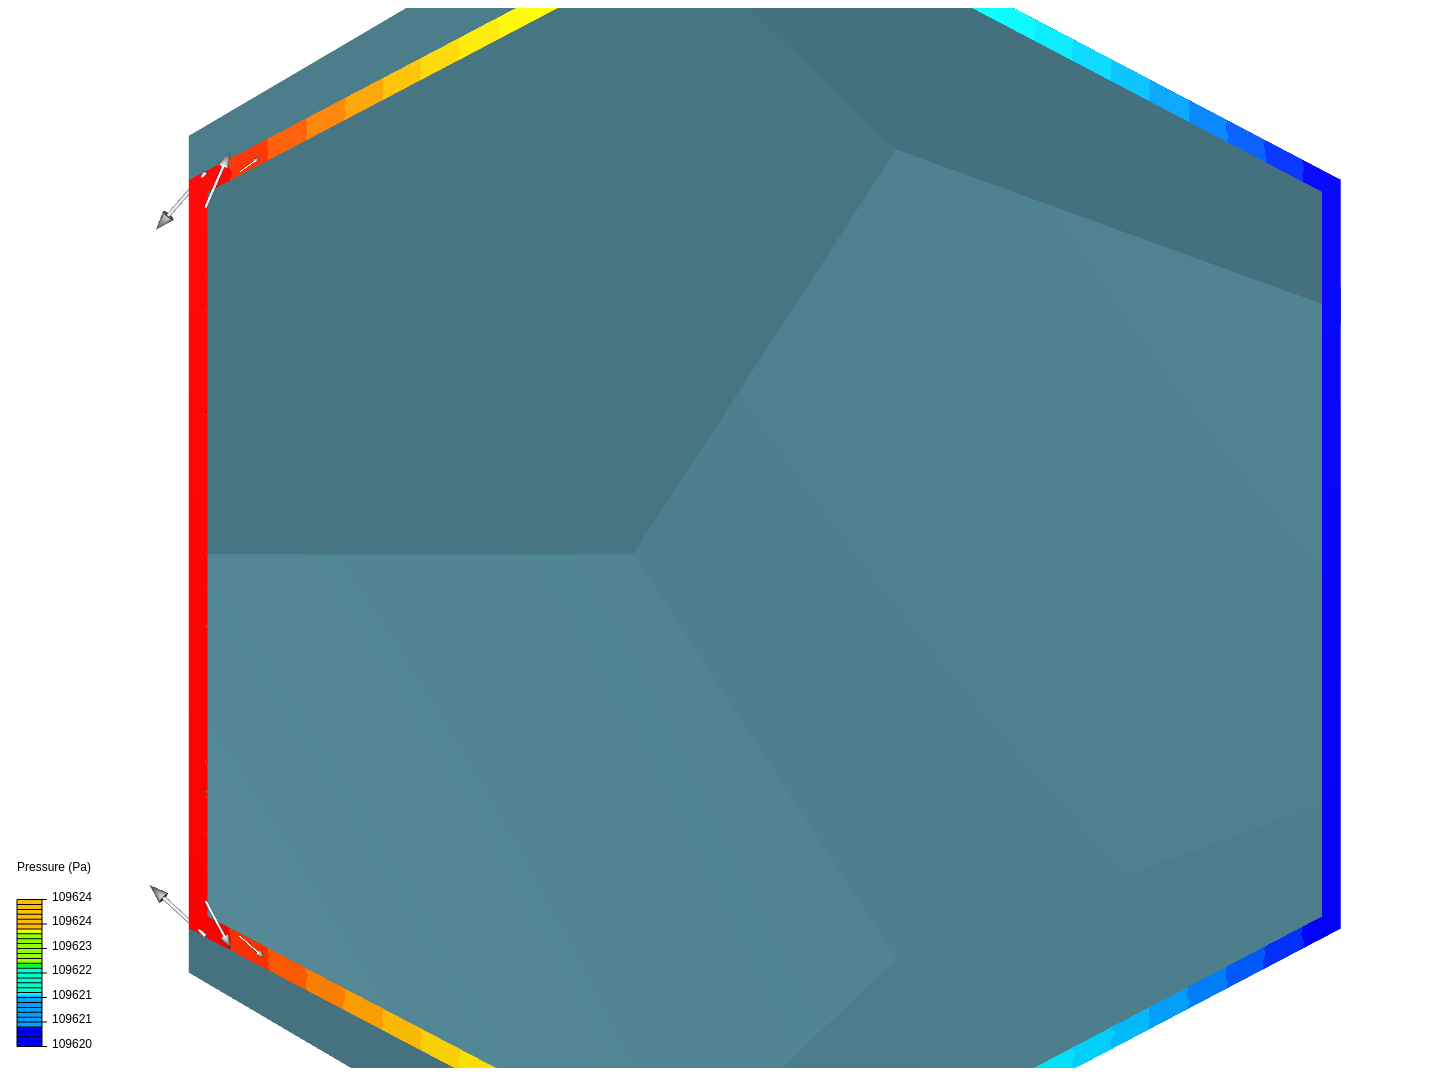 Energy cube image